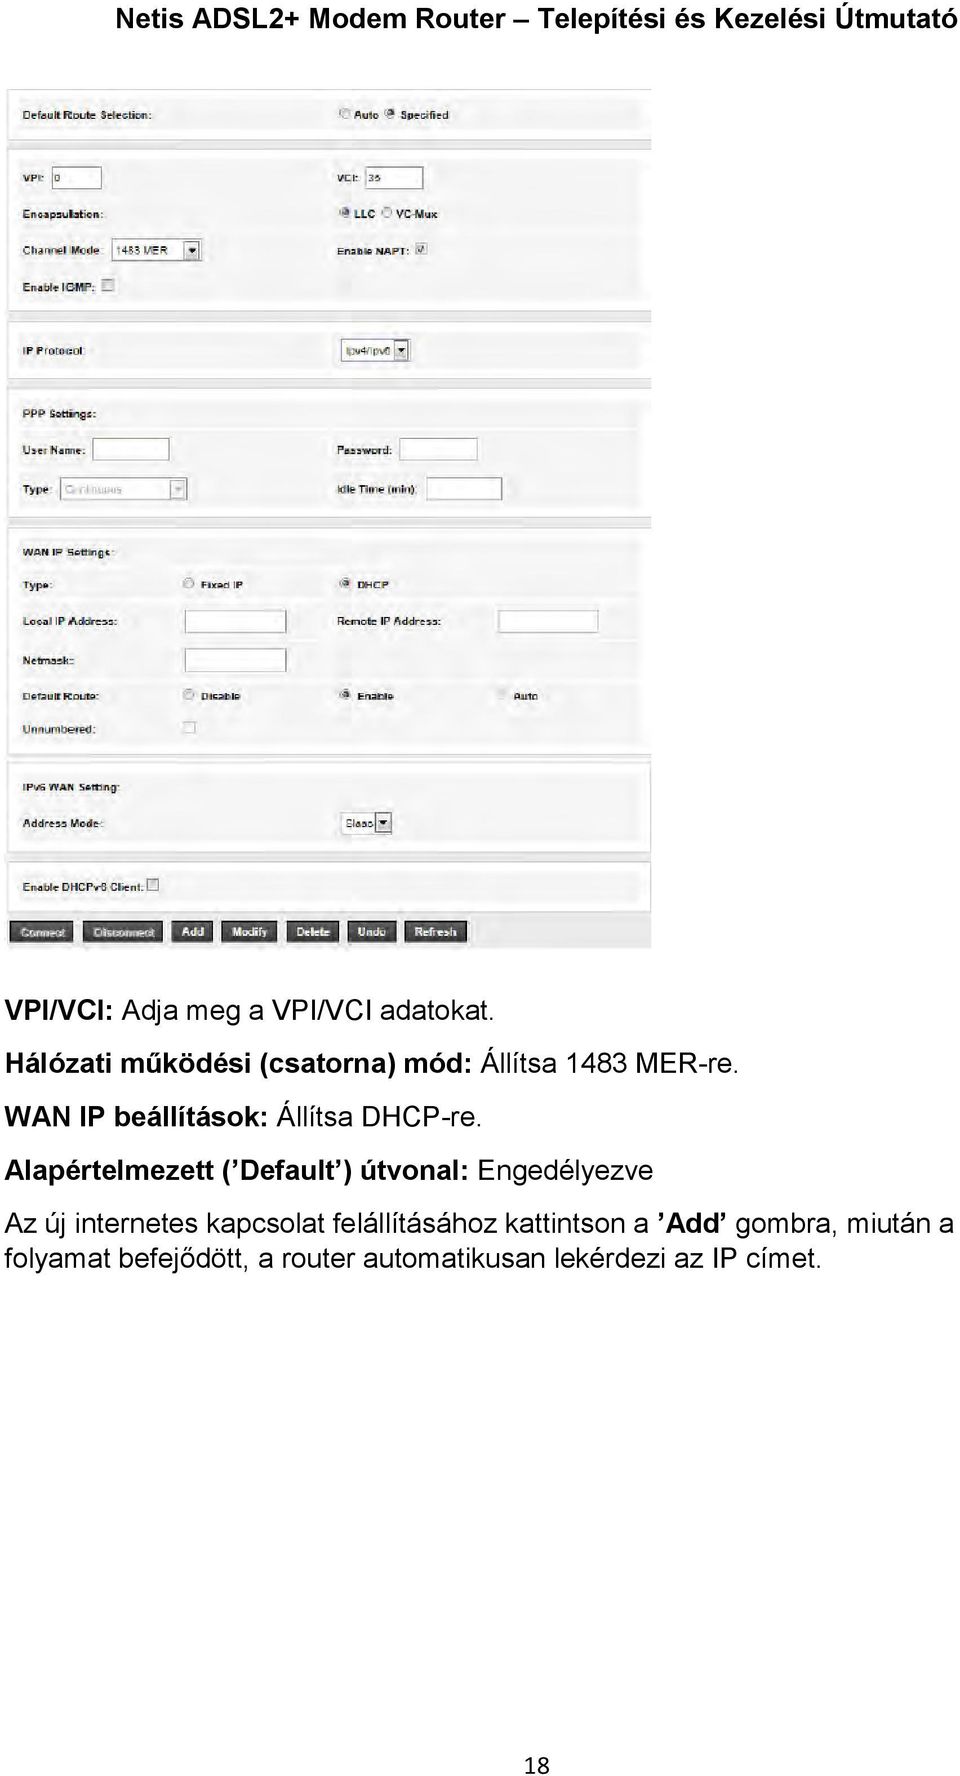 WAN IP beállítások: Állítsa DHCP-re.